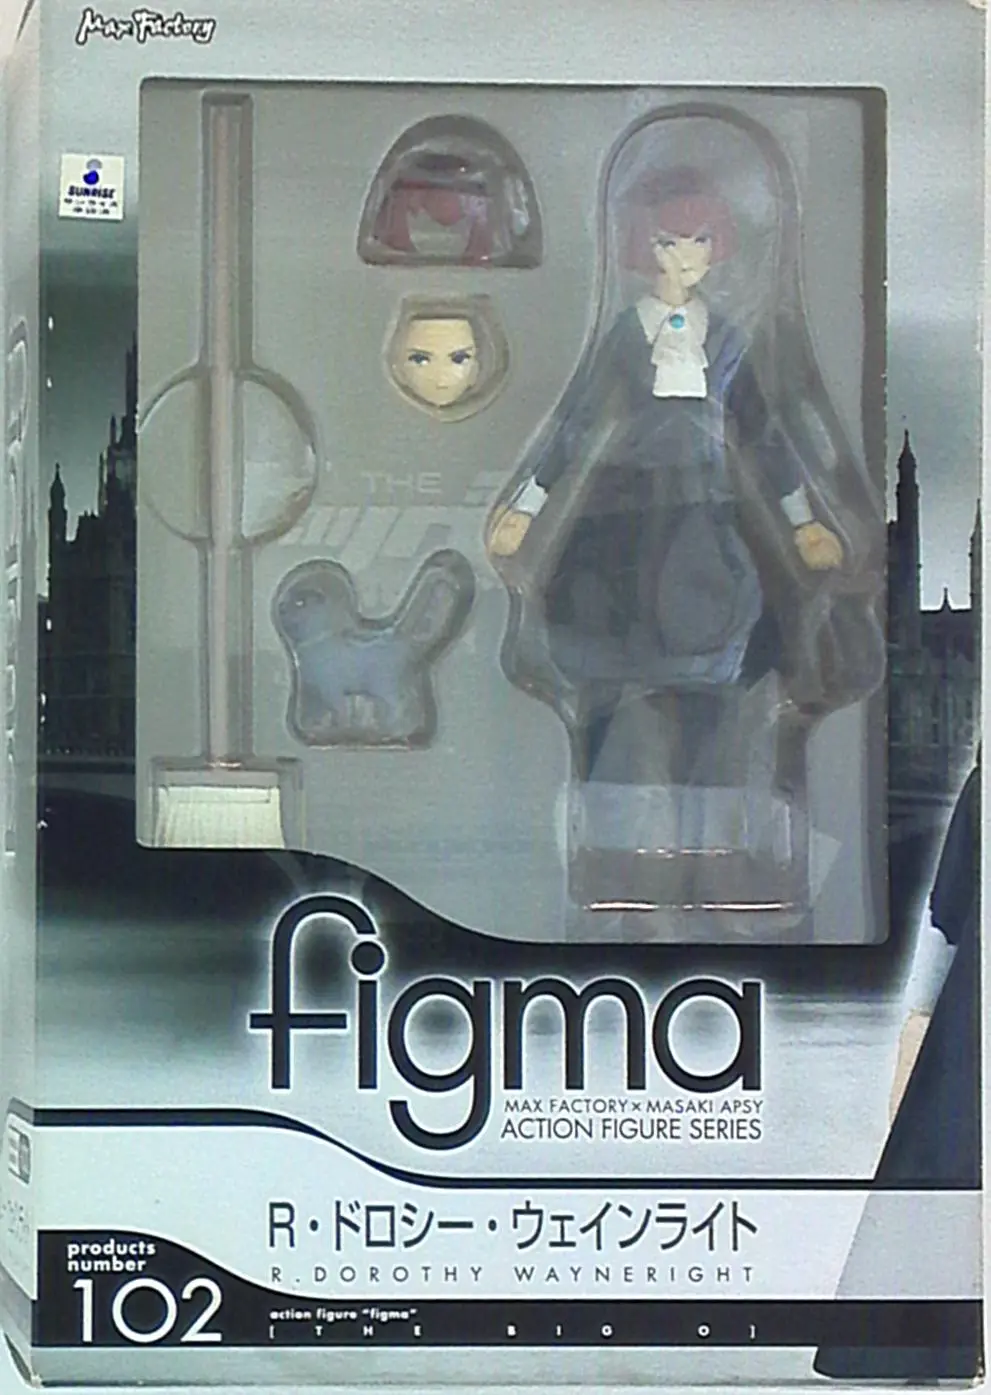 figma - The Big O